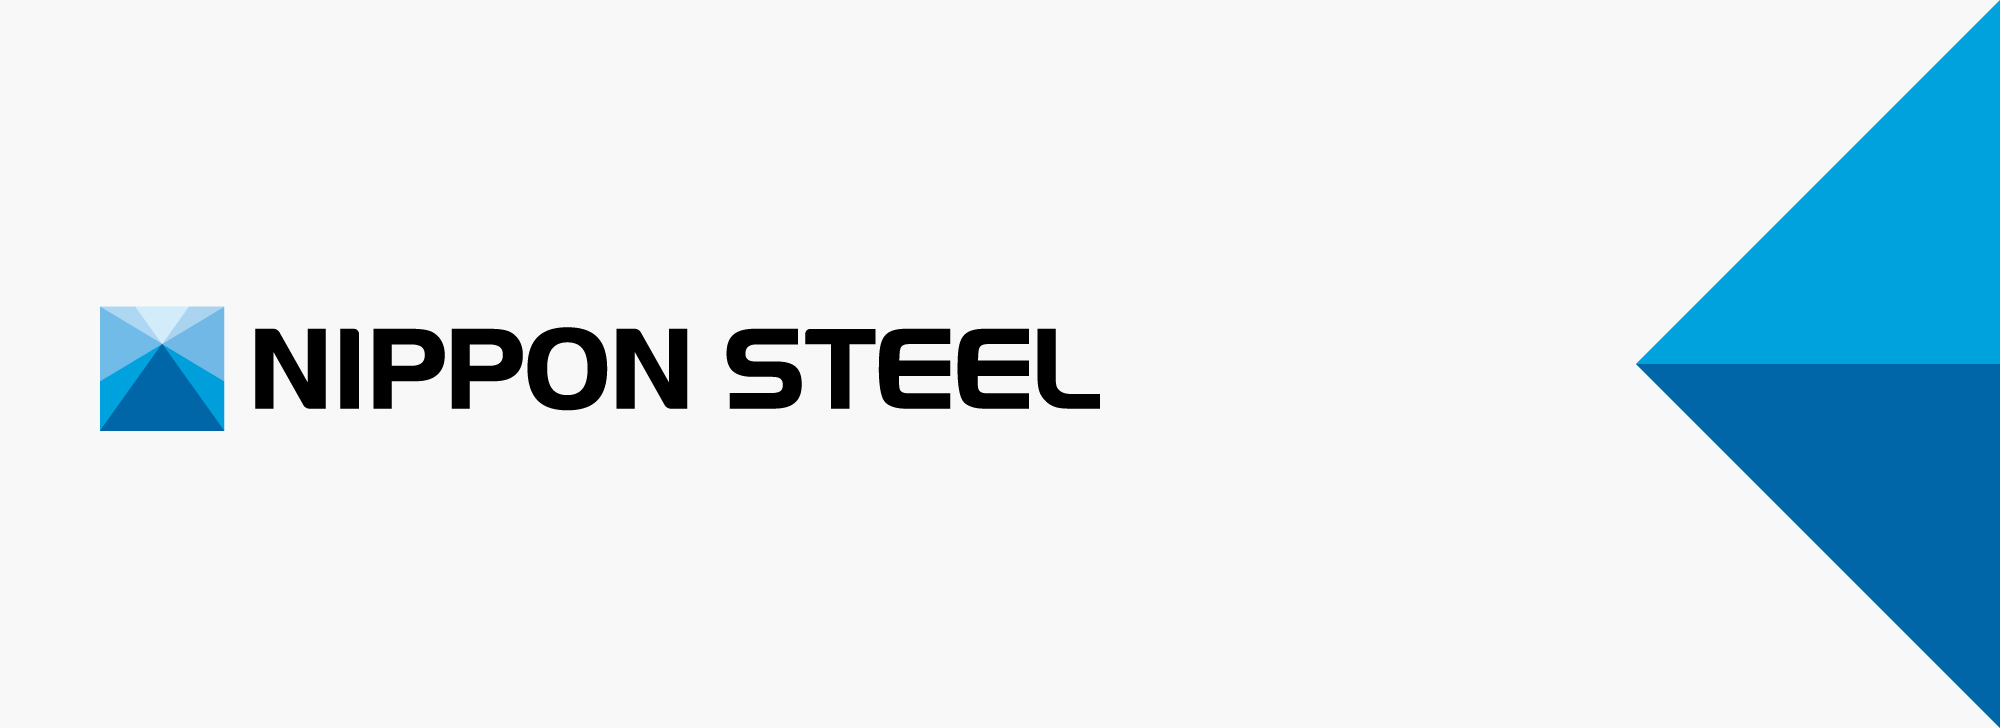 Nippon Steel інвестує у модернізацію машин безперервного лиття заготовок